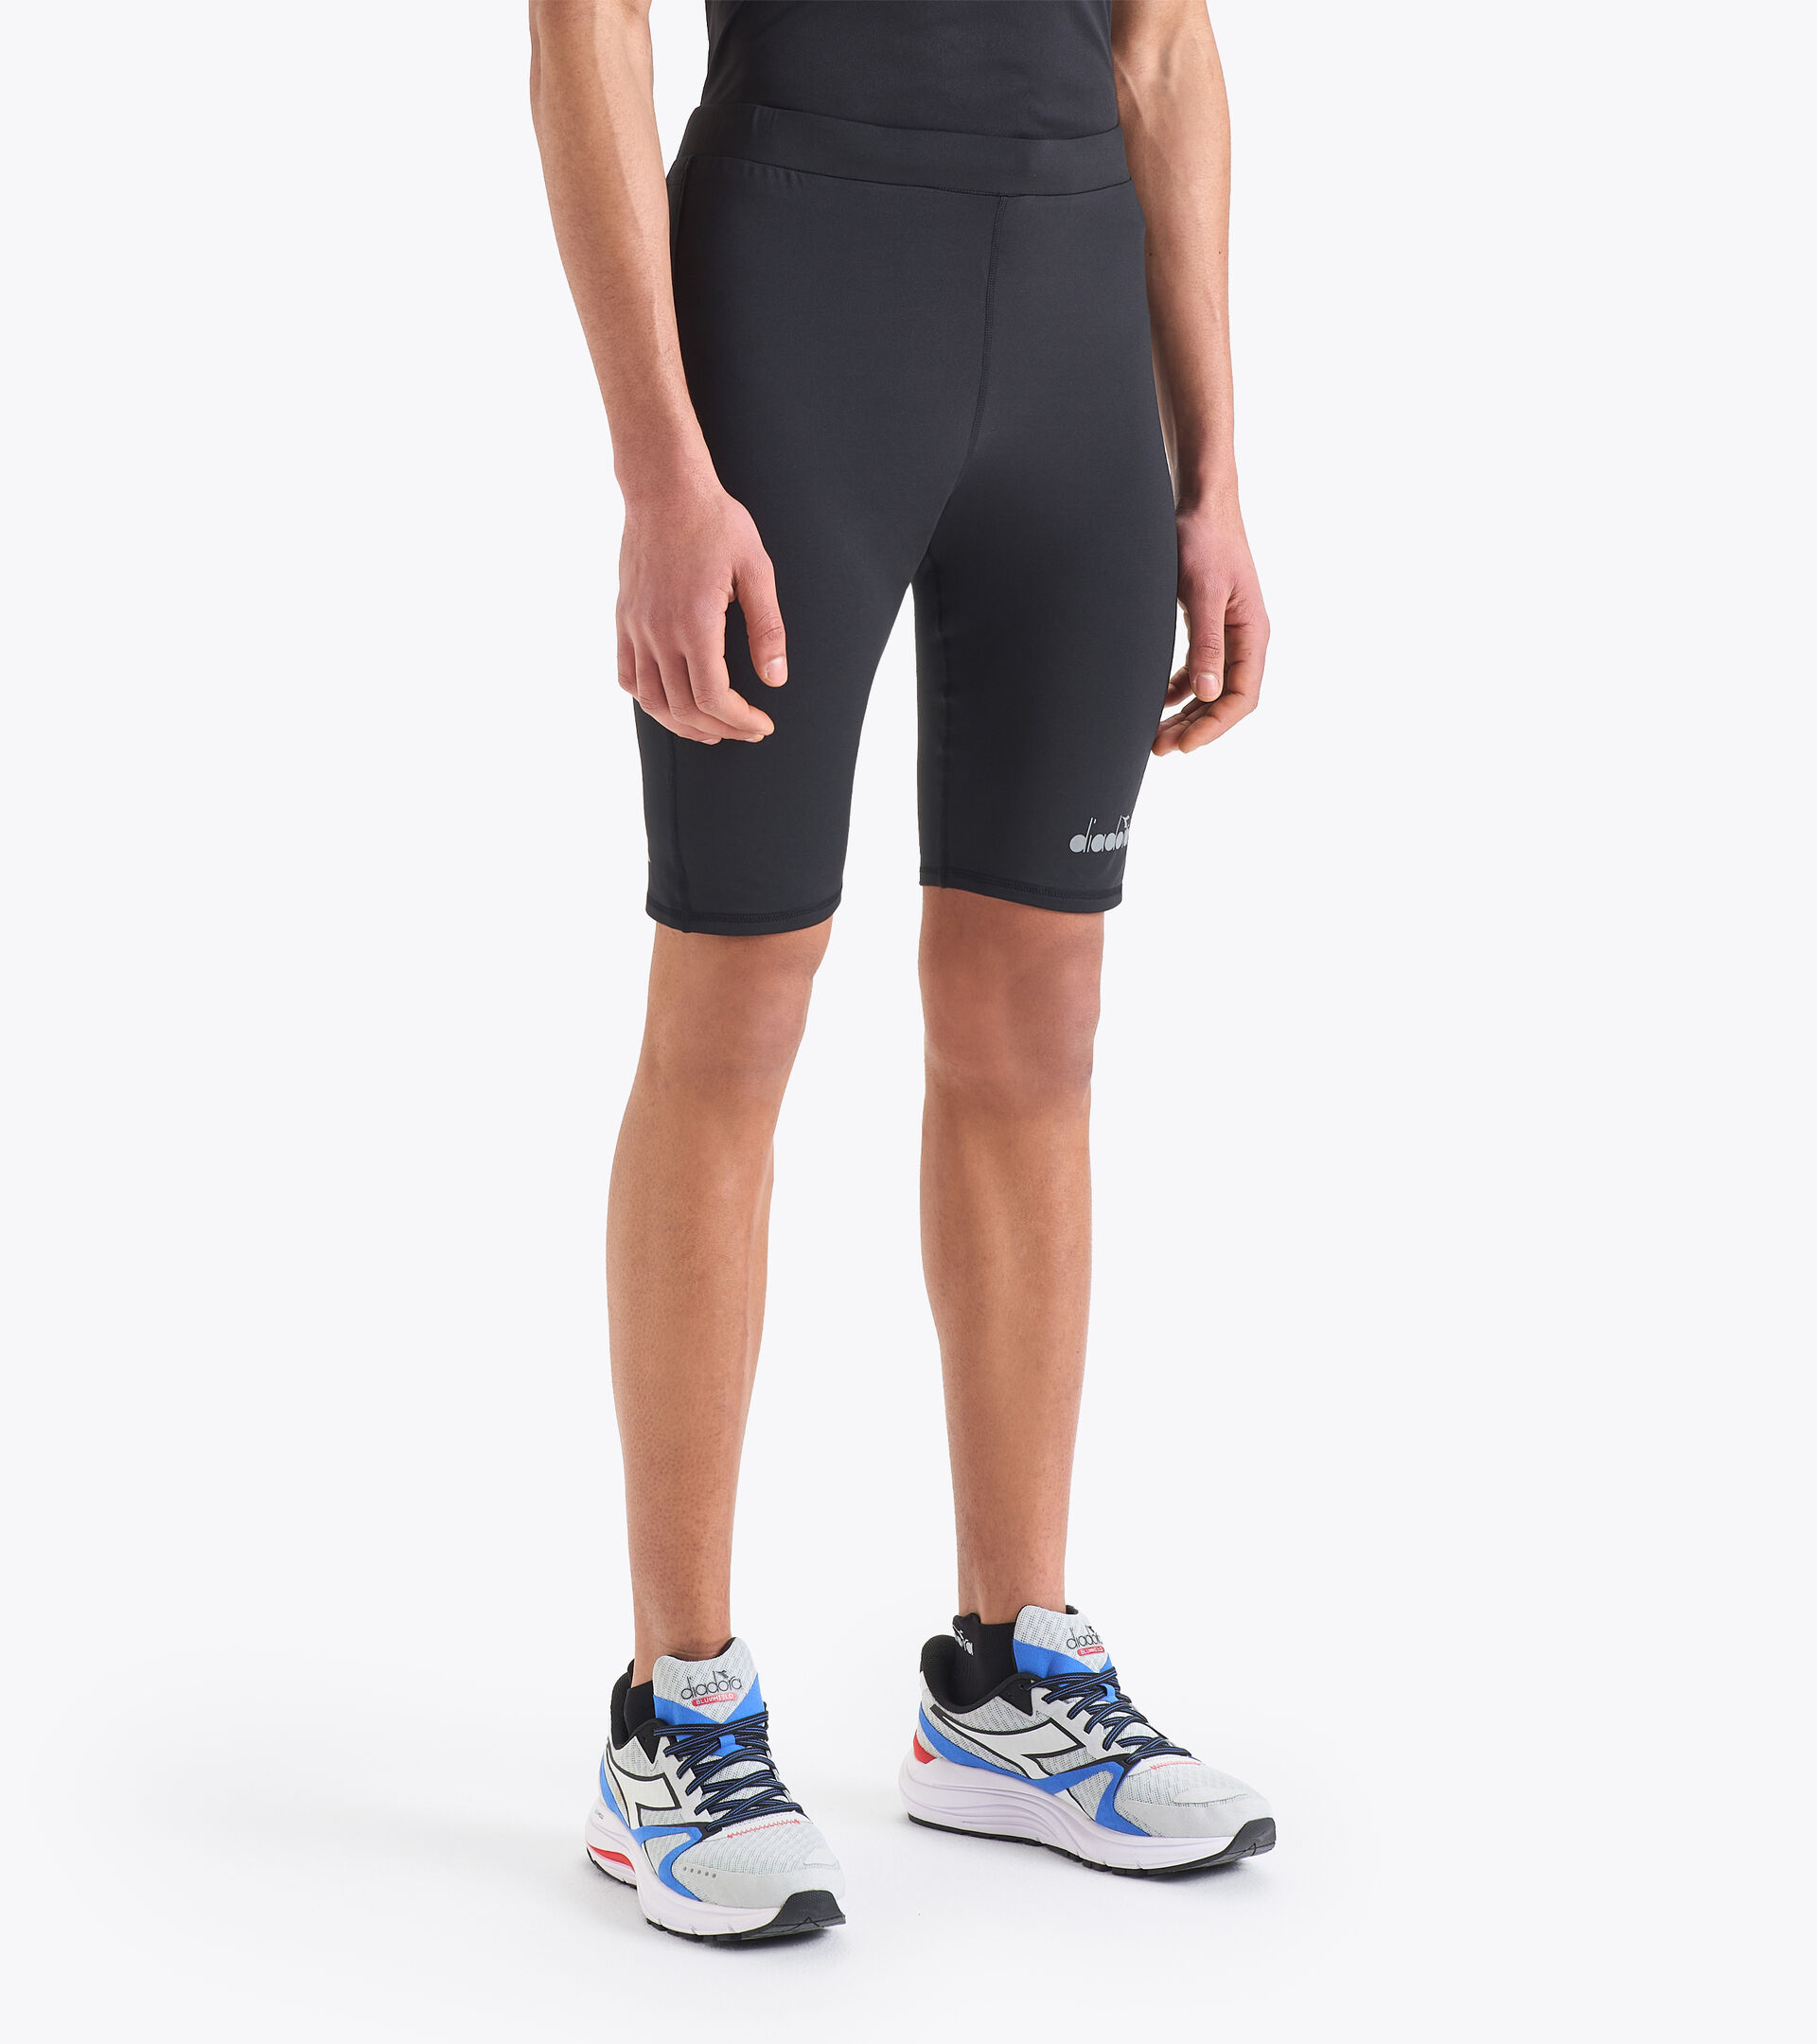 Running shorts - Men SHORT TIGHTS BLACK - Diadora